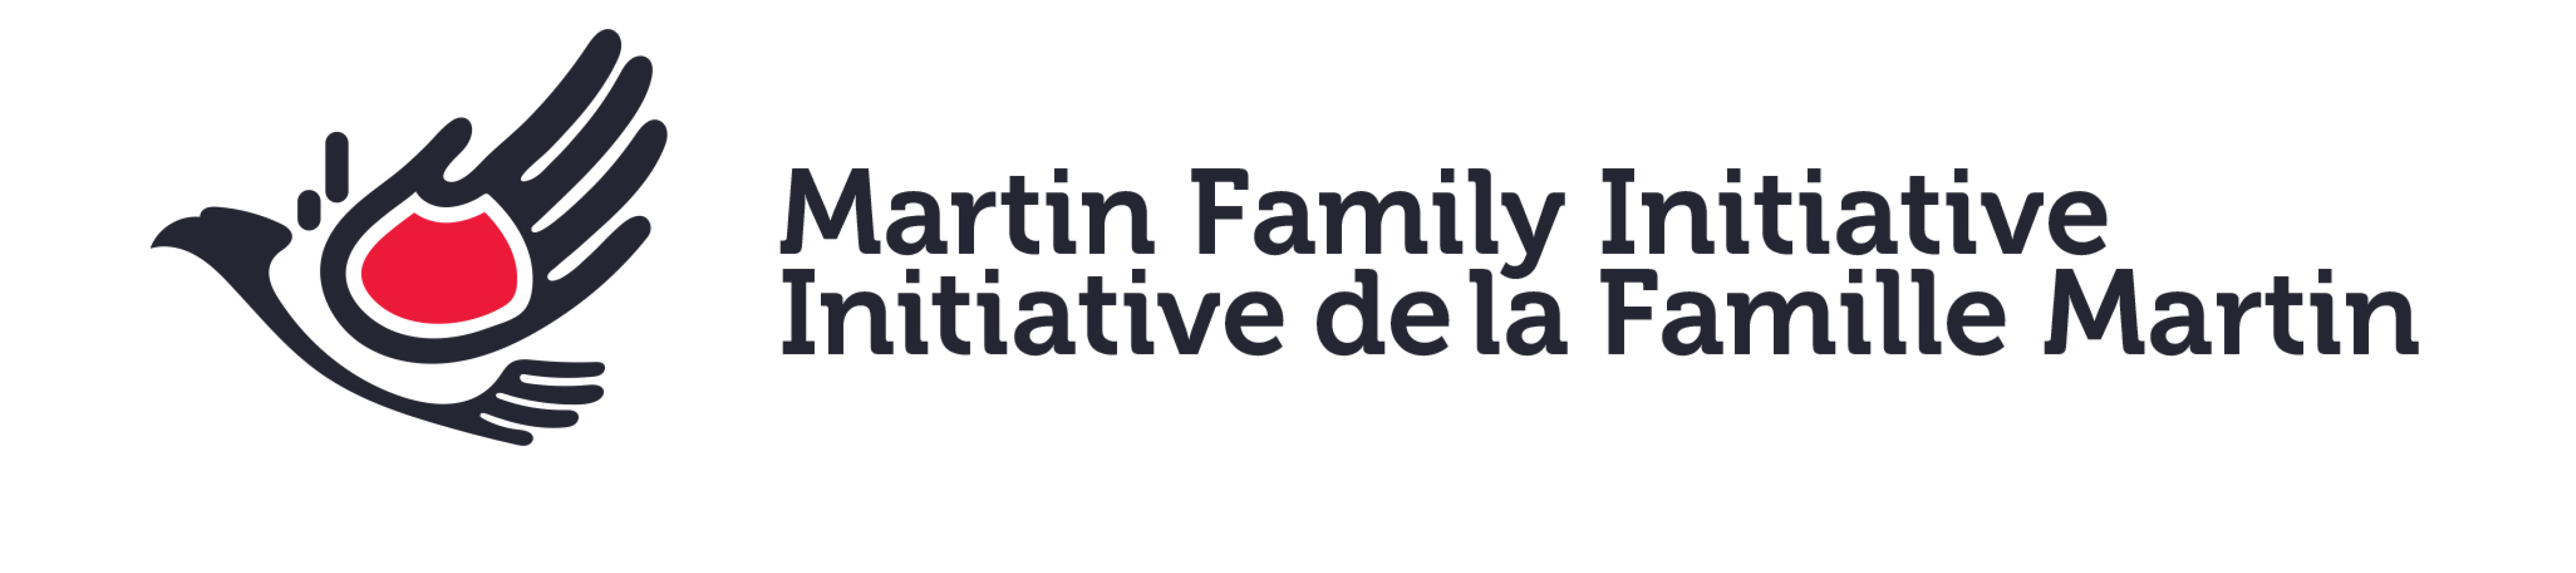 The Martin Family Initiative Rebrand - Logo - https://s41078.pcdn.co/wp-content/uploads/2018/11/Branding-or-Rebranding.jpg